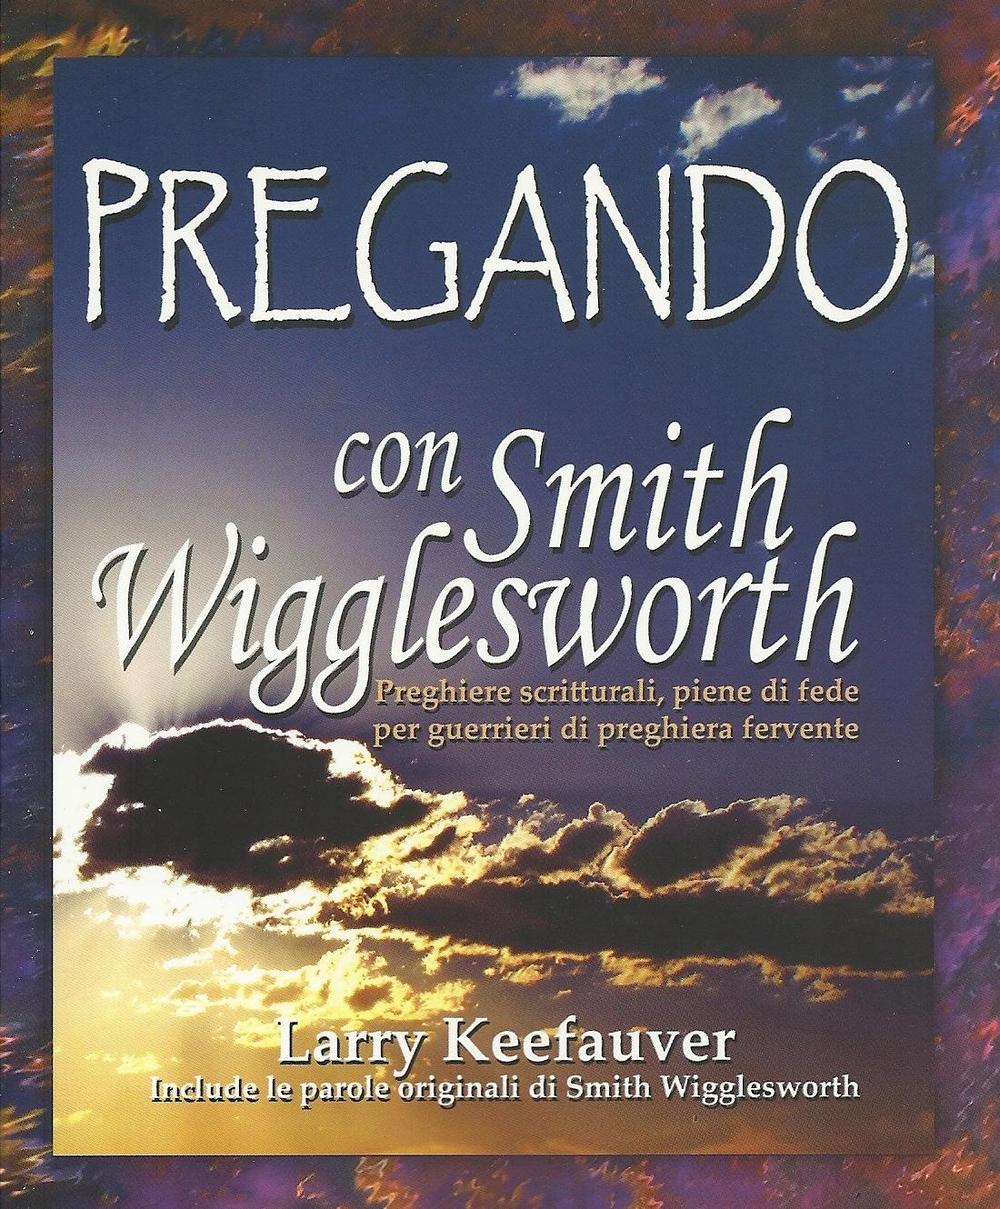 Pregando con Smith Wigglesworth